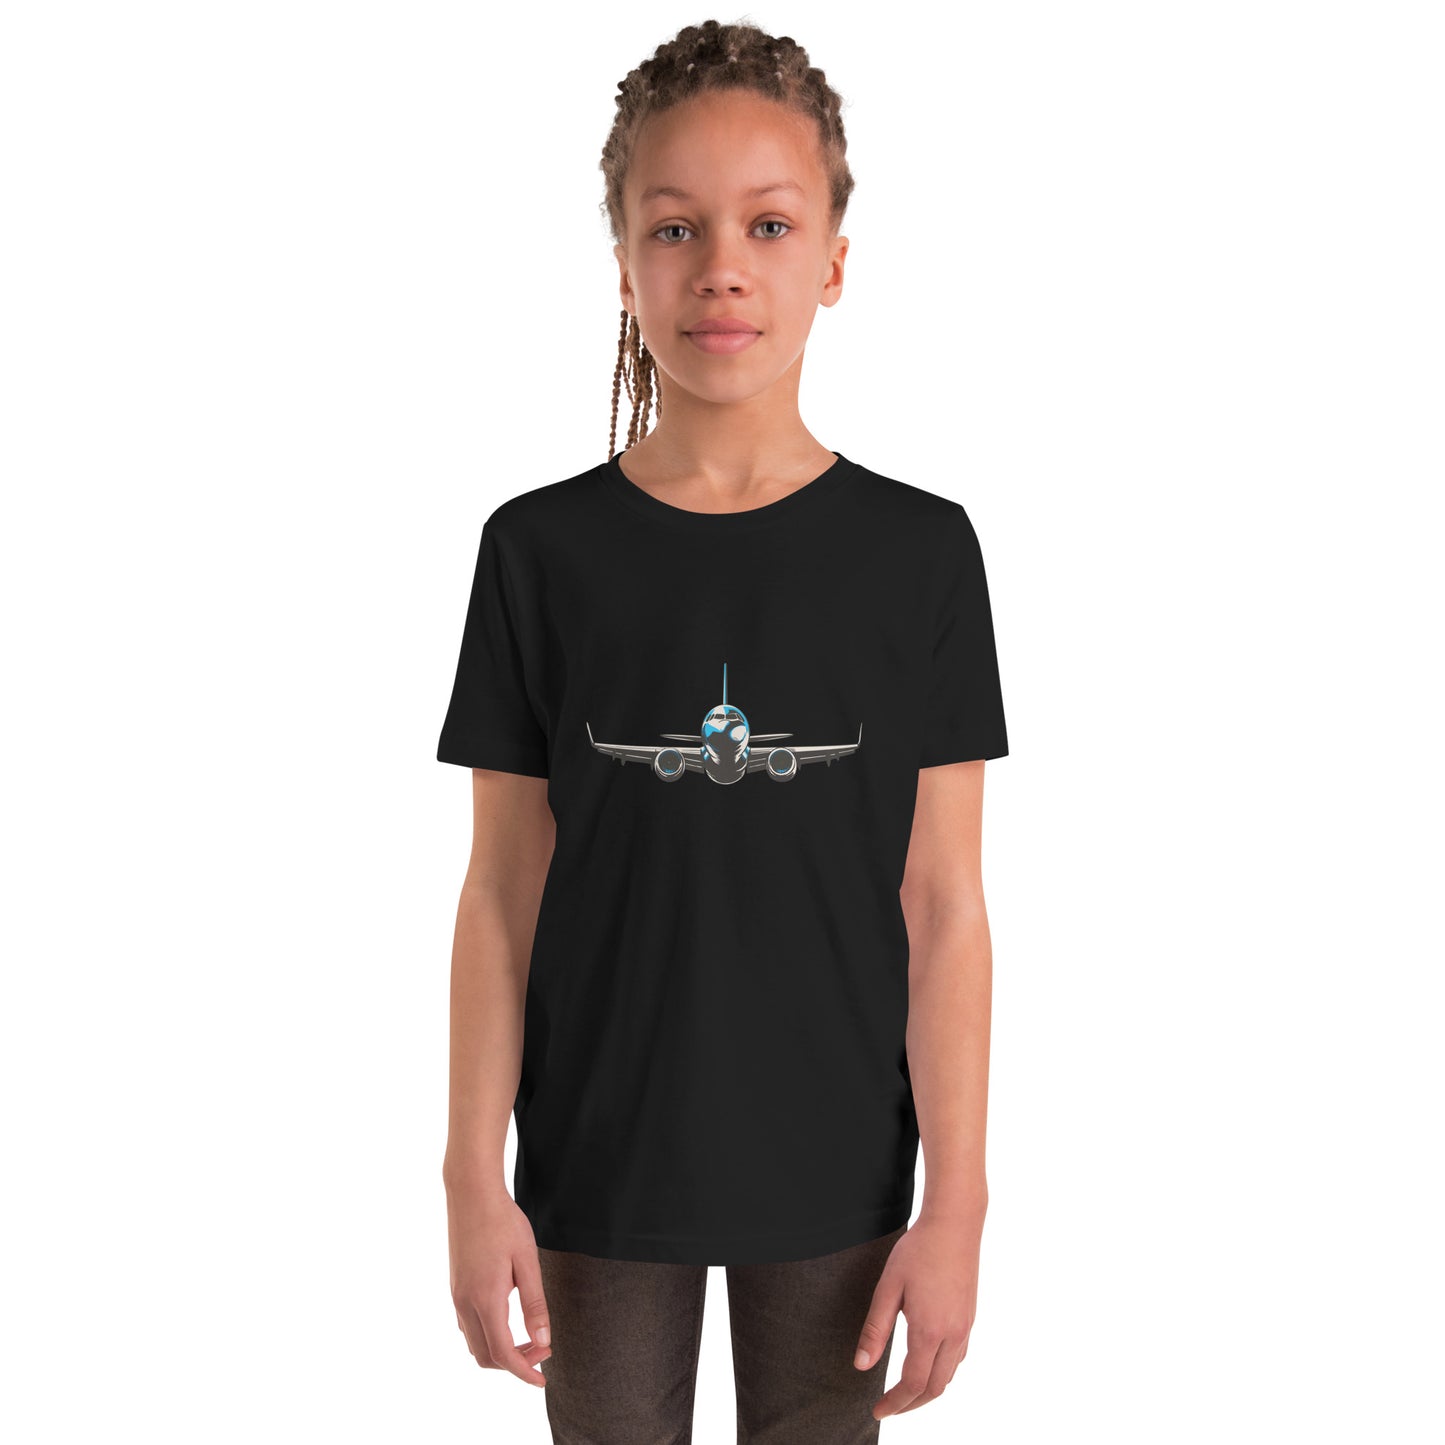 Aeroplane - Youth Short Sleeve T-Shirt